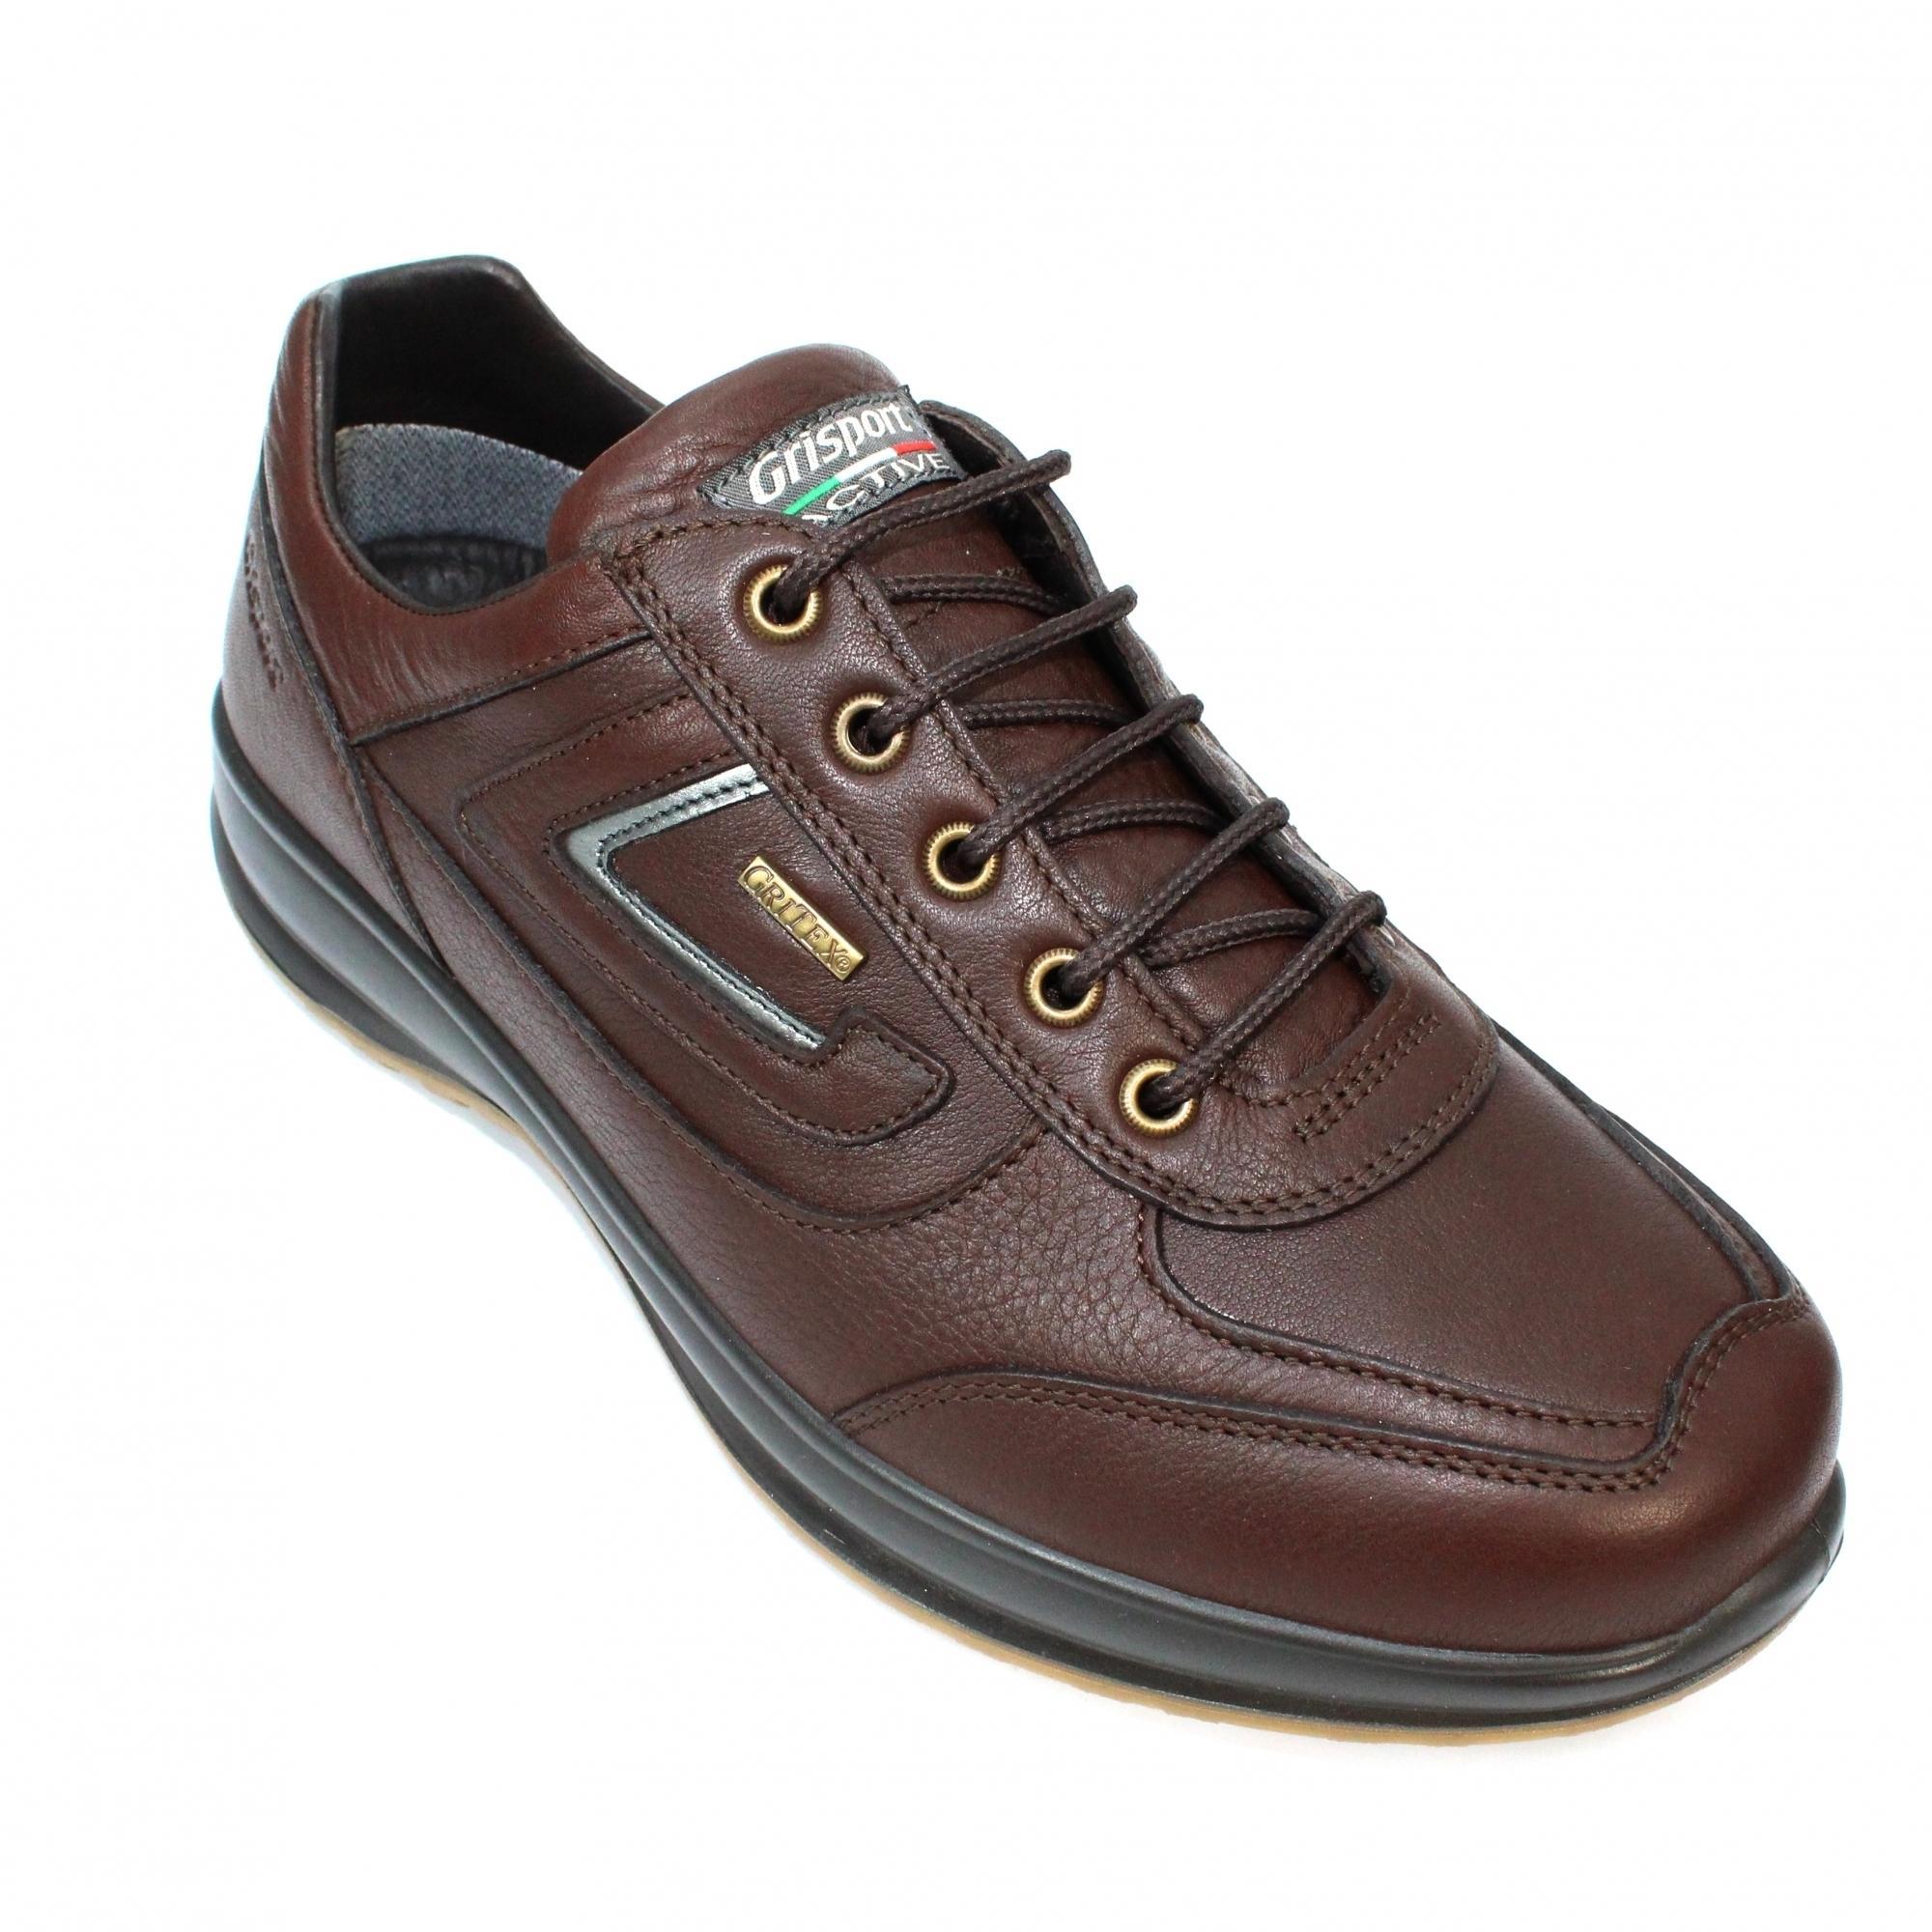 Grisport Mens Airwalker Leather Walking Shoes (Brown) (8 UK)